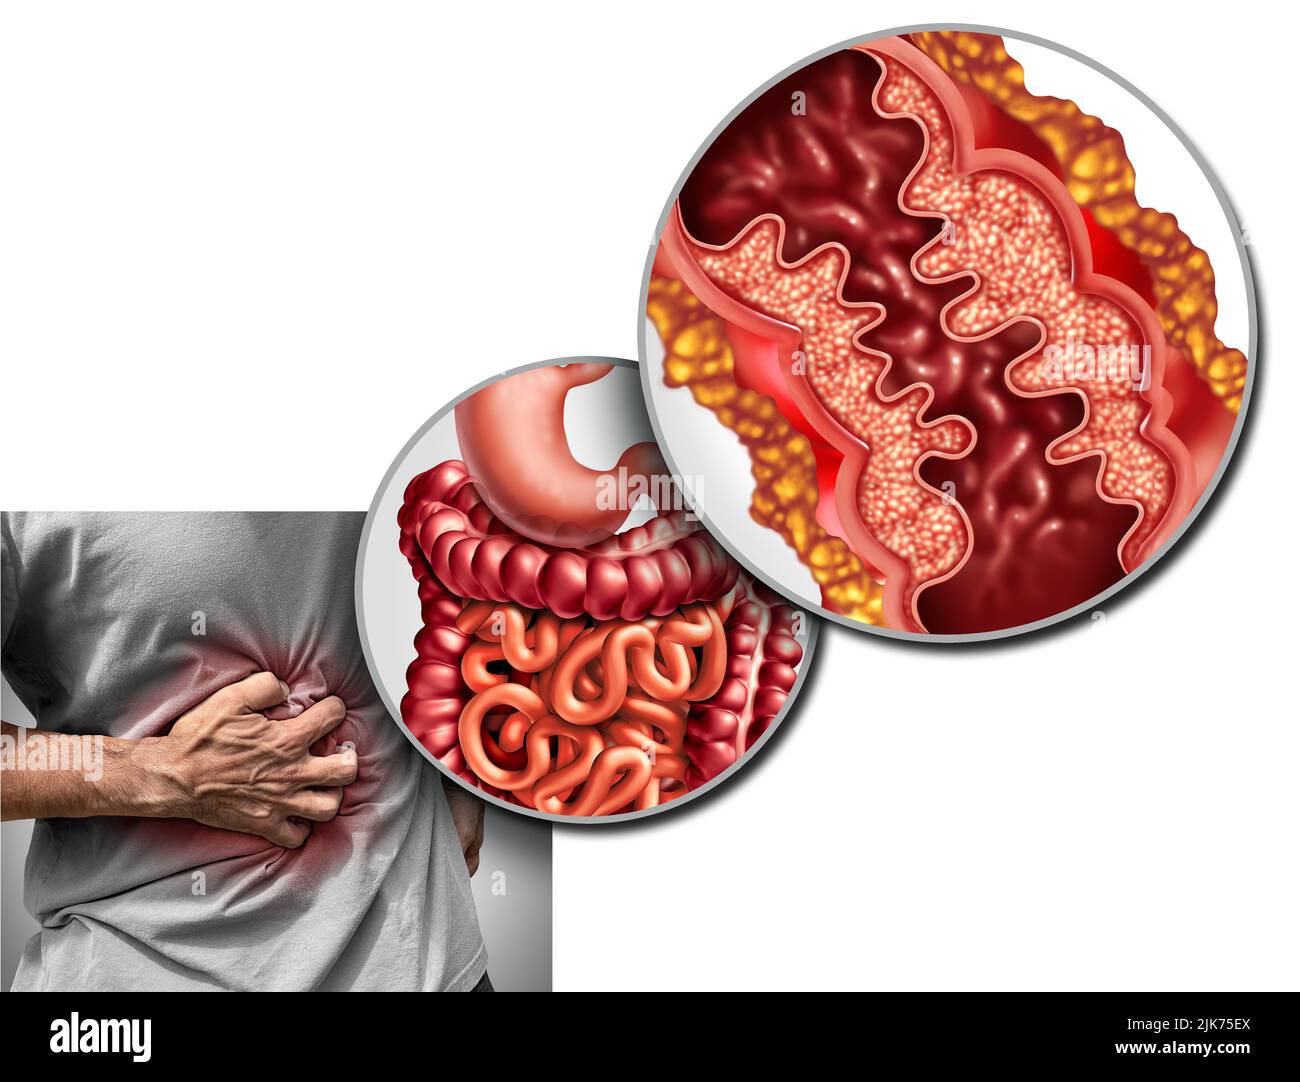 Enfermedad de Crohn Dolor y síndrome de Crohn Enfermedad o Trastorno de crohns como concepto médico con un acercamiento de un intestino humano con inflamación. Foto de stock